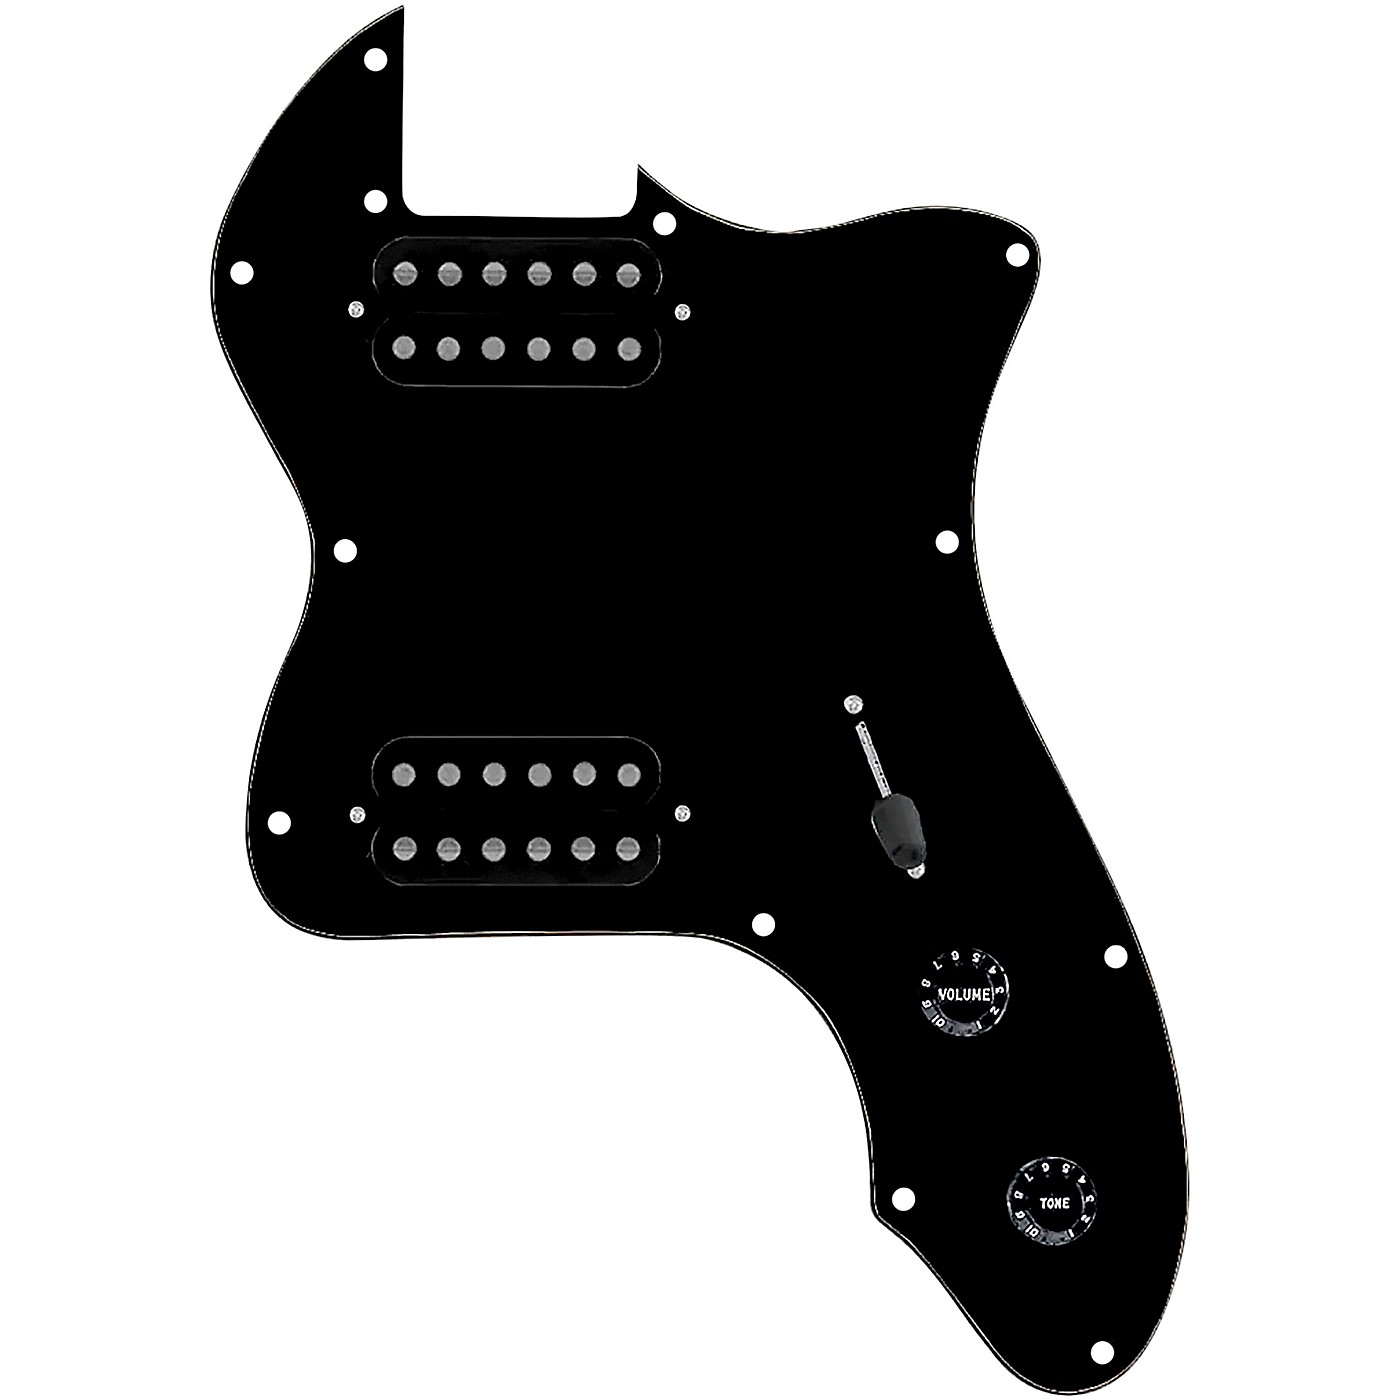 Fender Embossed Black Logo Barstool 24 Black/Black (61 cm)